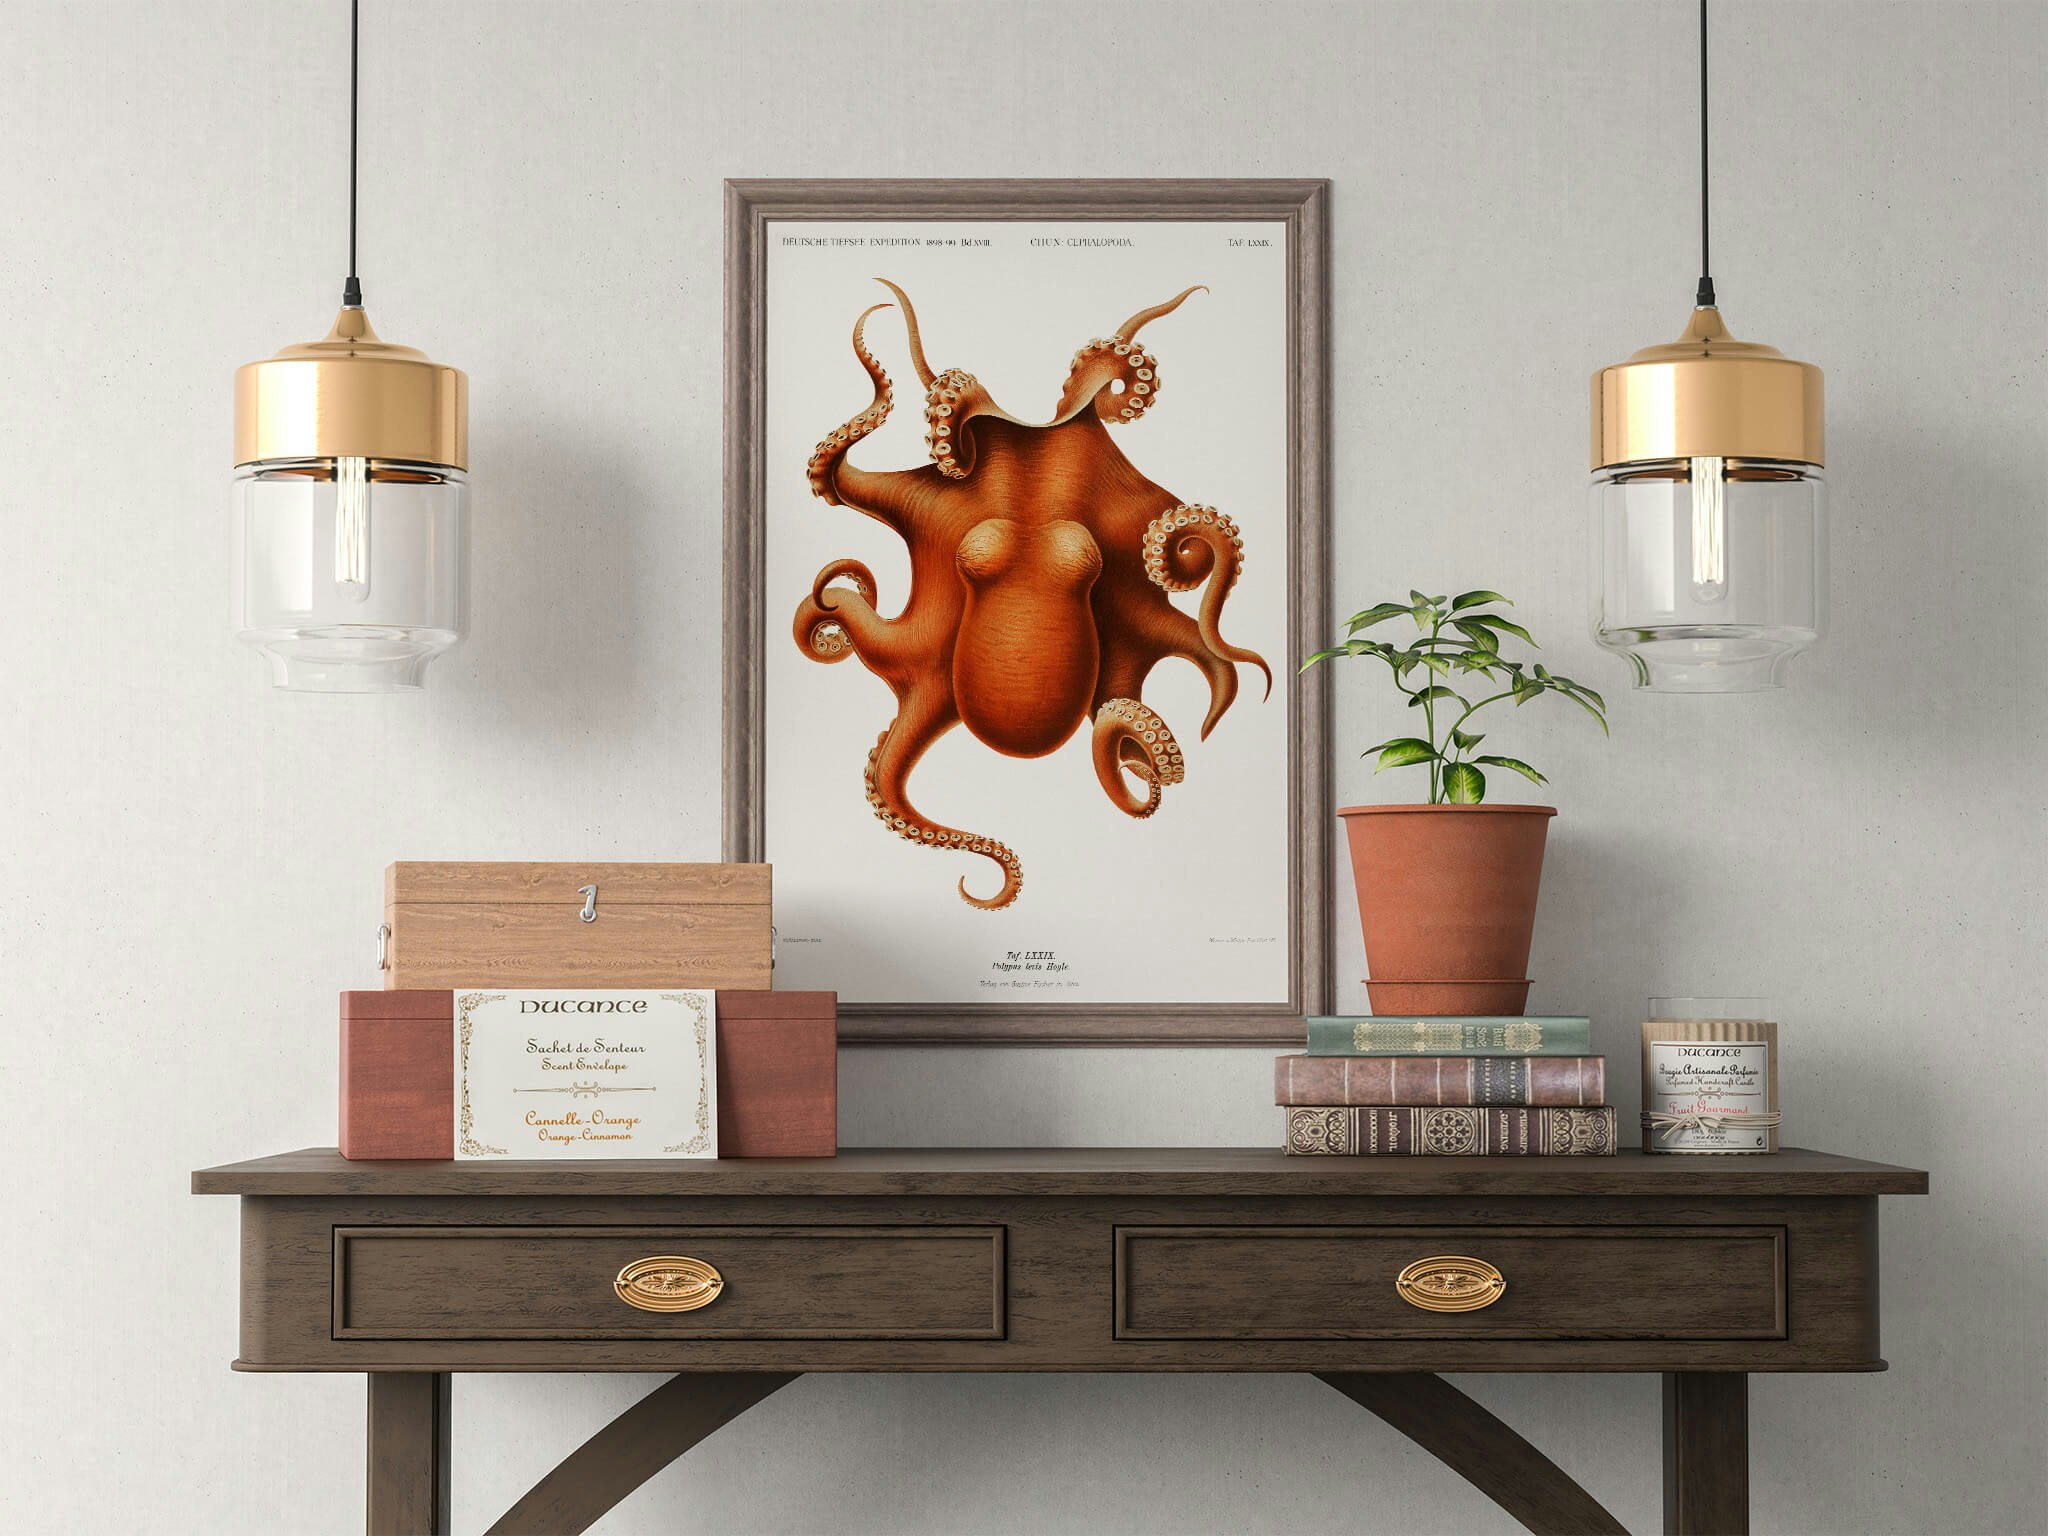 Octopus v1 Poster